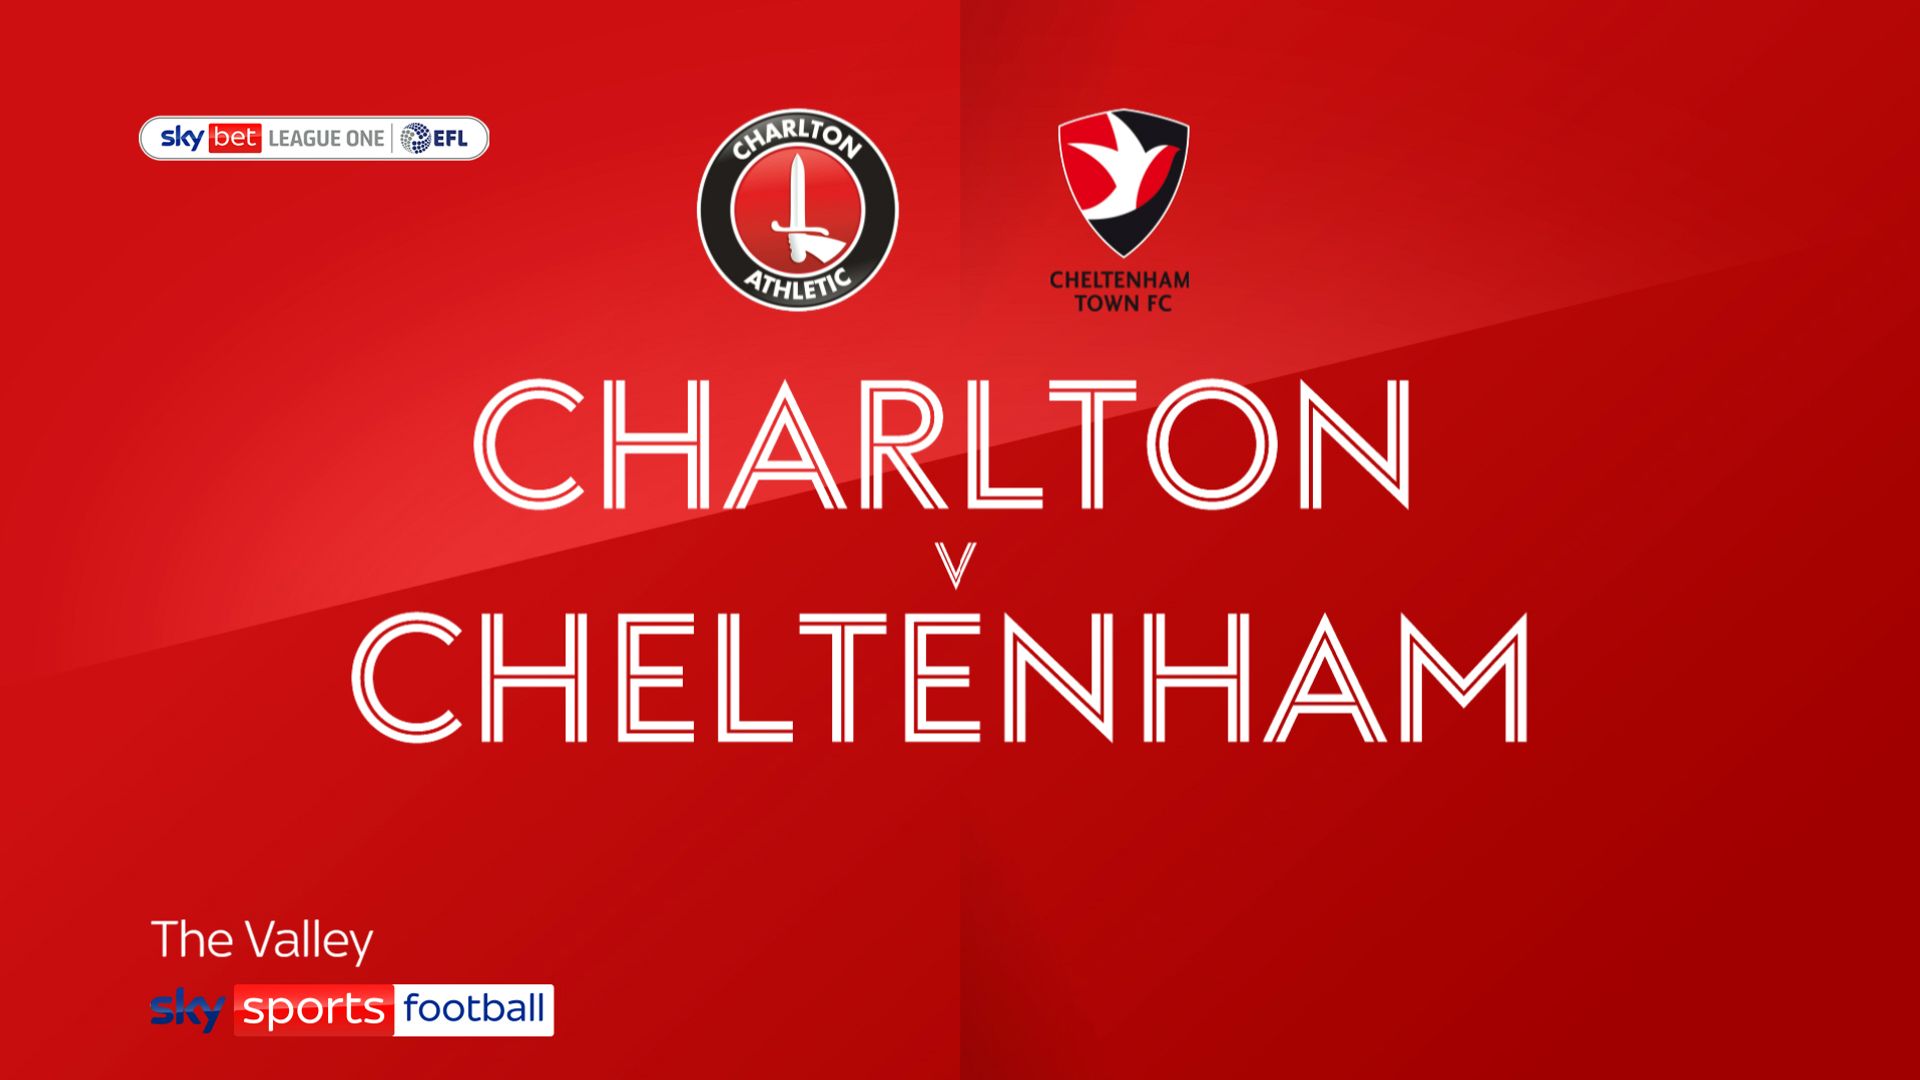 Charlton 0-1 Cheltenham: Alfie May hits winner at The Valley